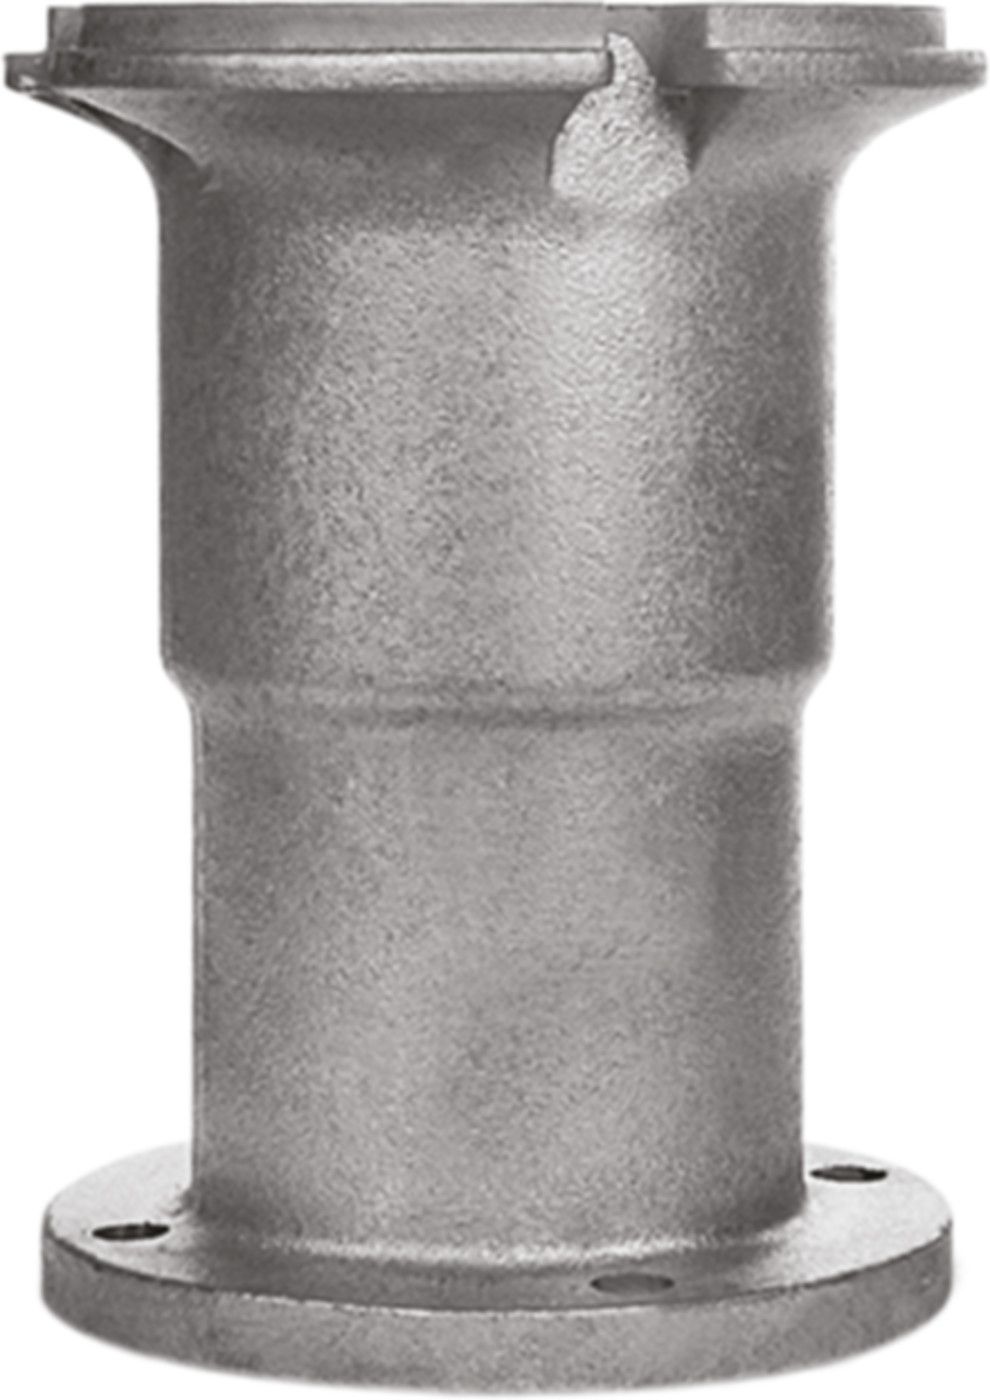 Obere Hydrantenverlängerung Fig. 7990 mit Spindelverlängerung H = 300mm - Von Roll Hydrantenzubehör